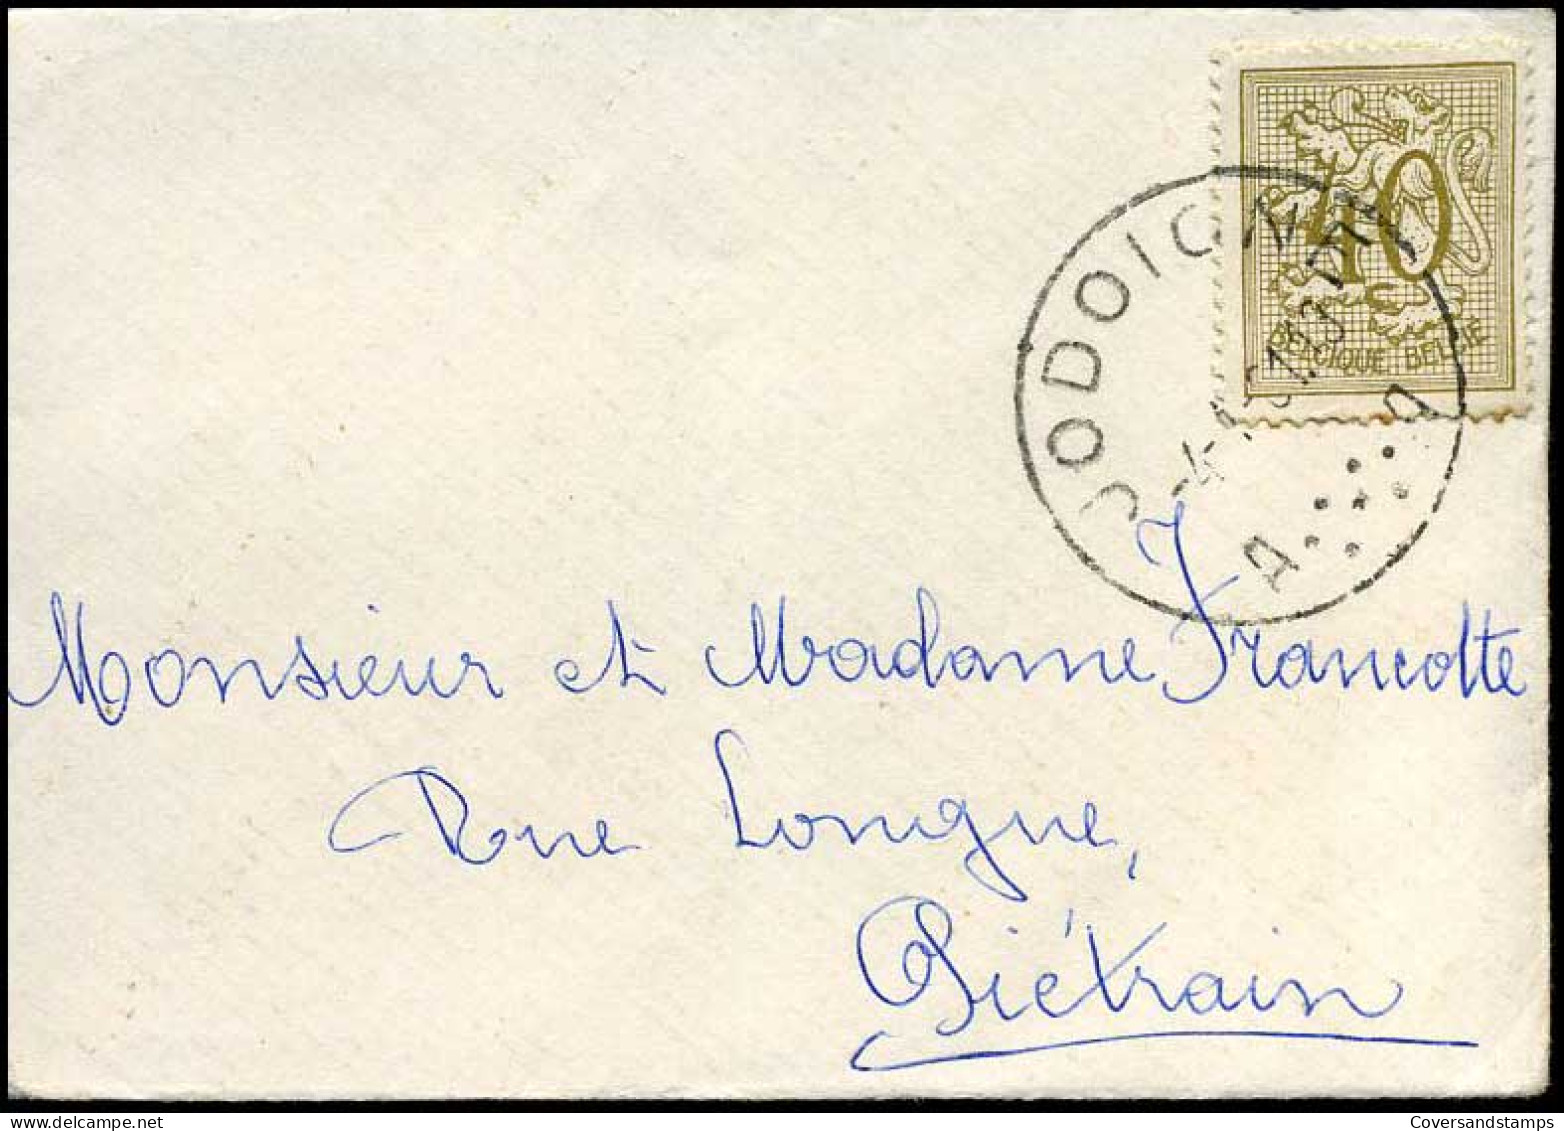 Kleine Envelop / Petite Enveloppe Met N° 853 - 1951-1975 Leone Araldico